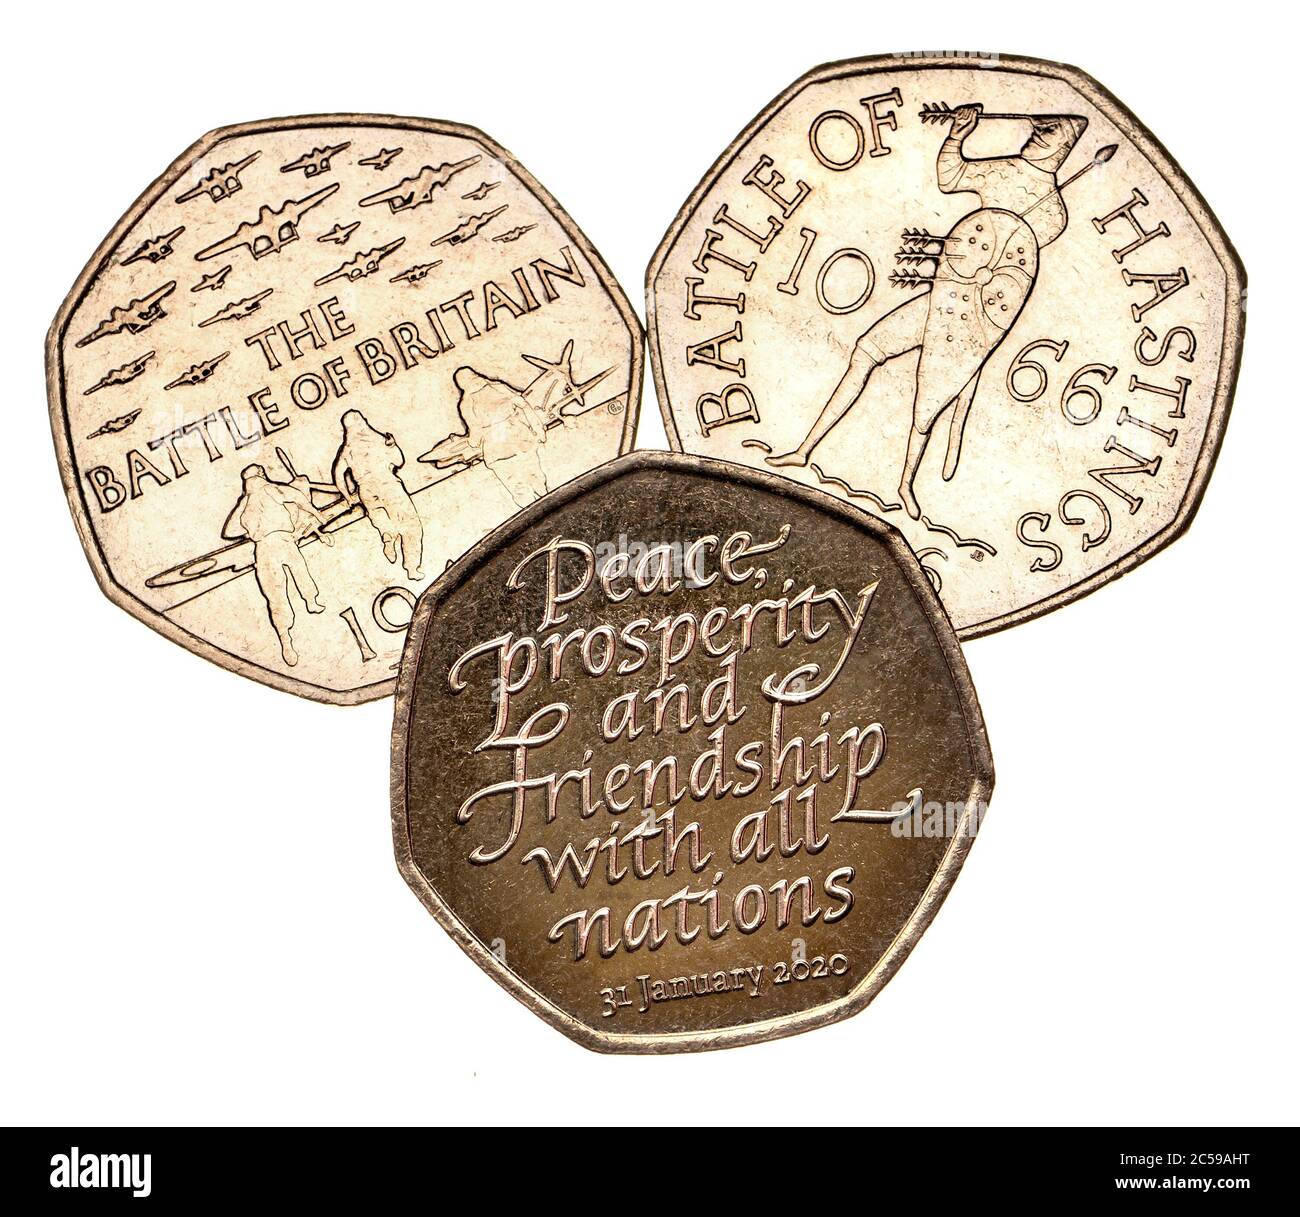 Monete commemorative inglesi da 50 p. Battaglia di Gran Bretagna (2015) Battaglia di Hastings (2016) Brexit (2020) Foto Stock